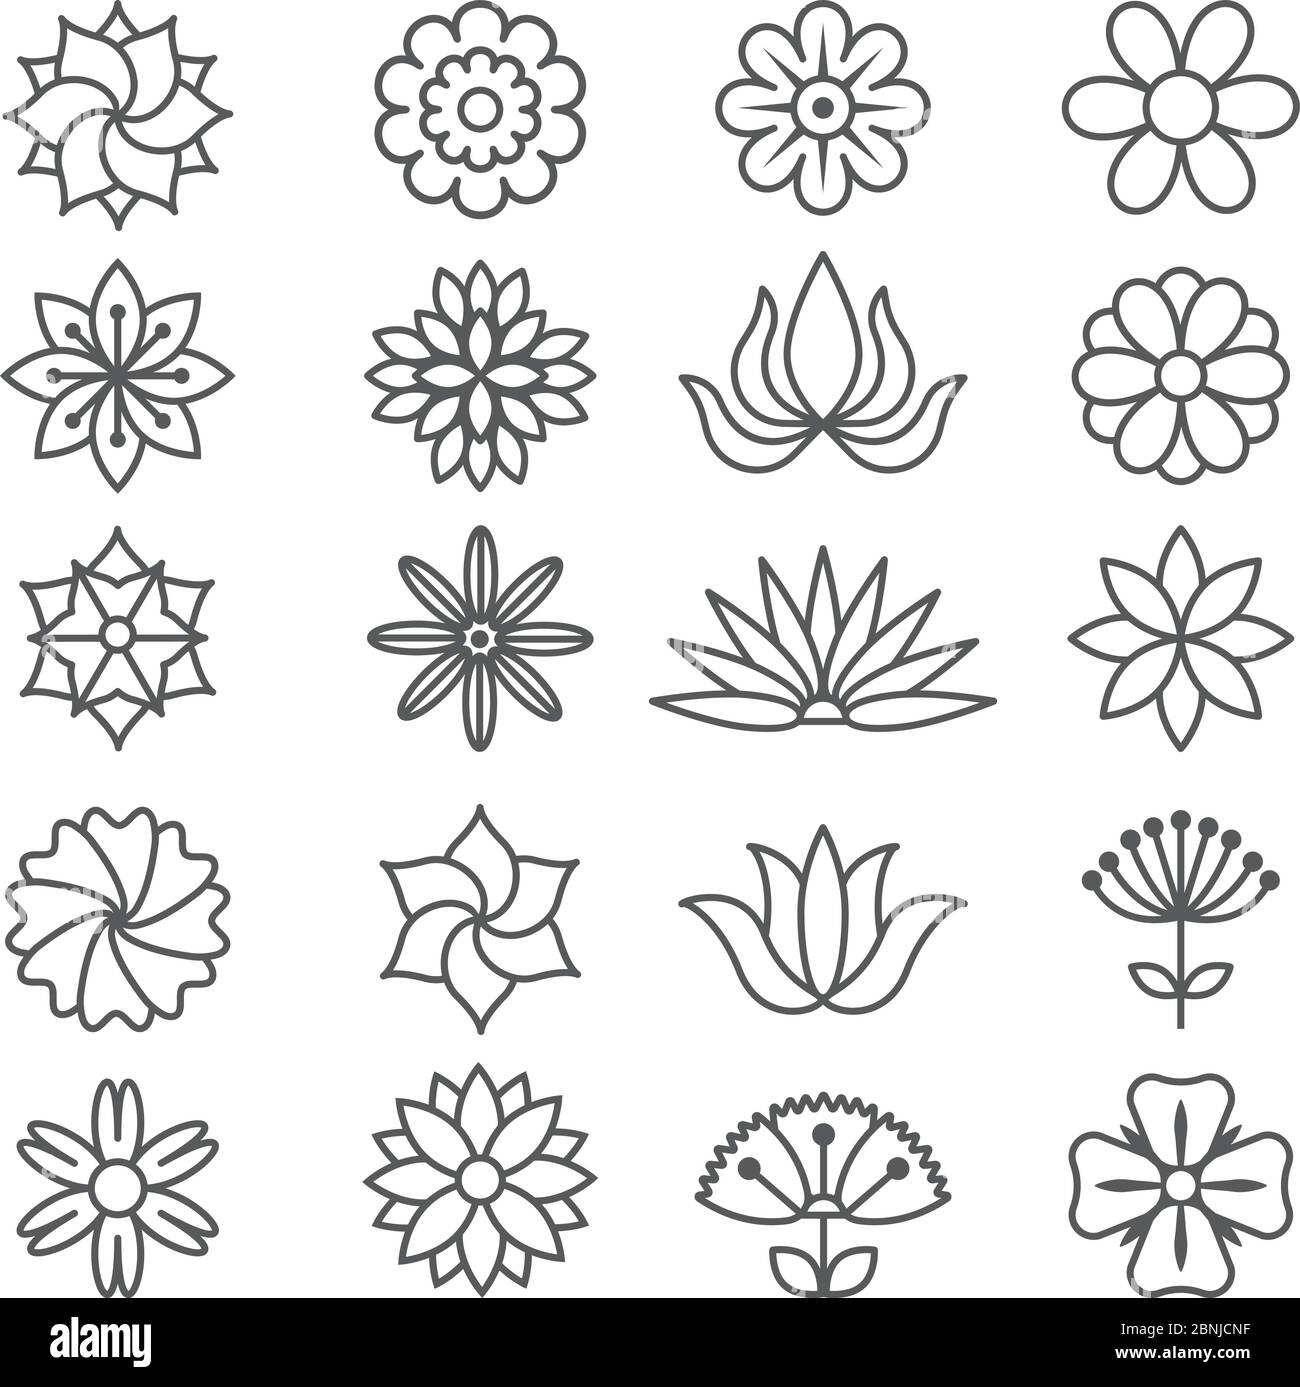 Florale monochrome Bilder für Logos Design Stock Vektor